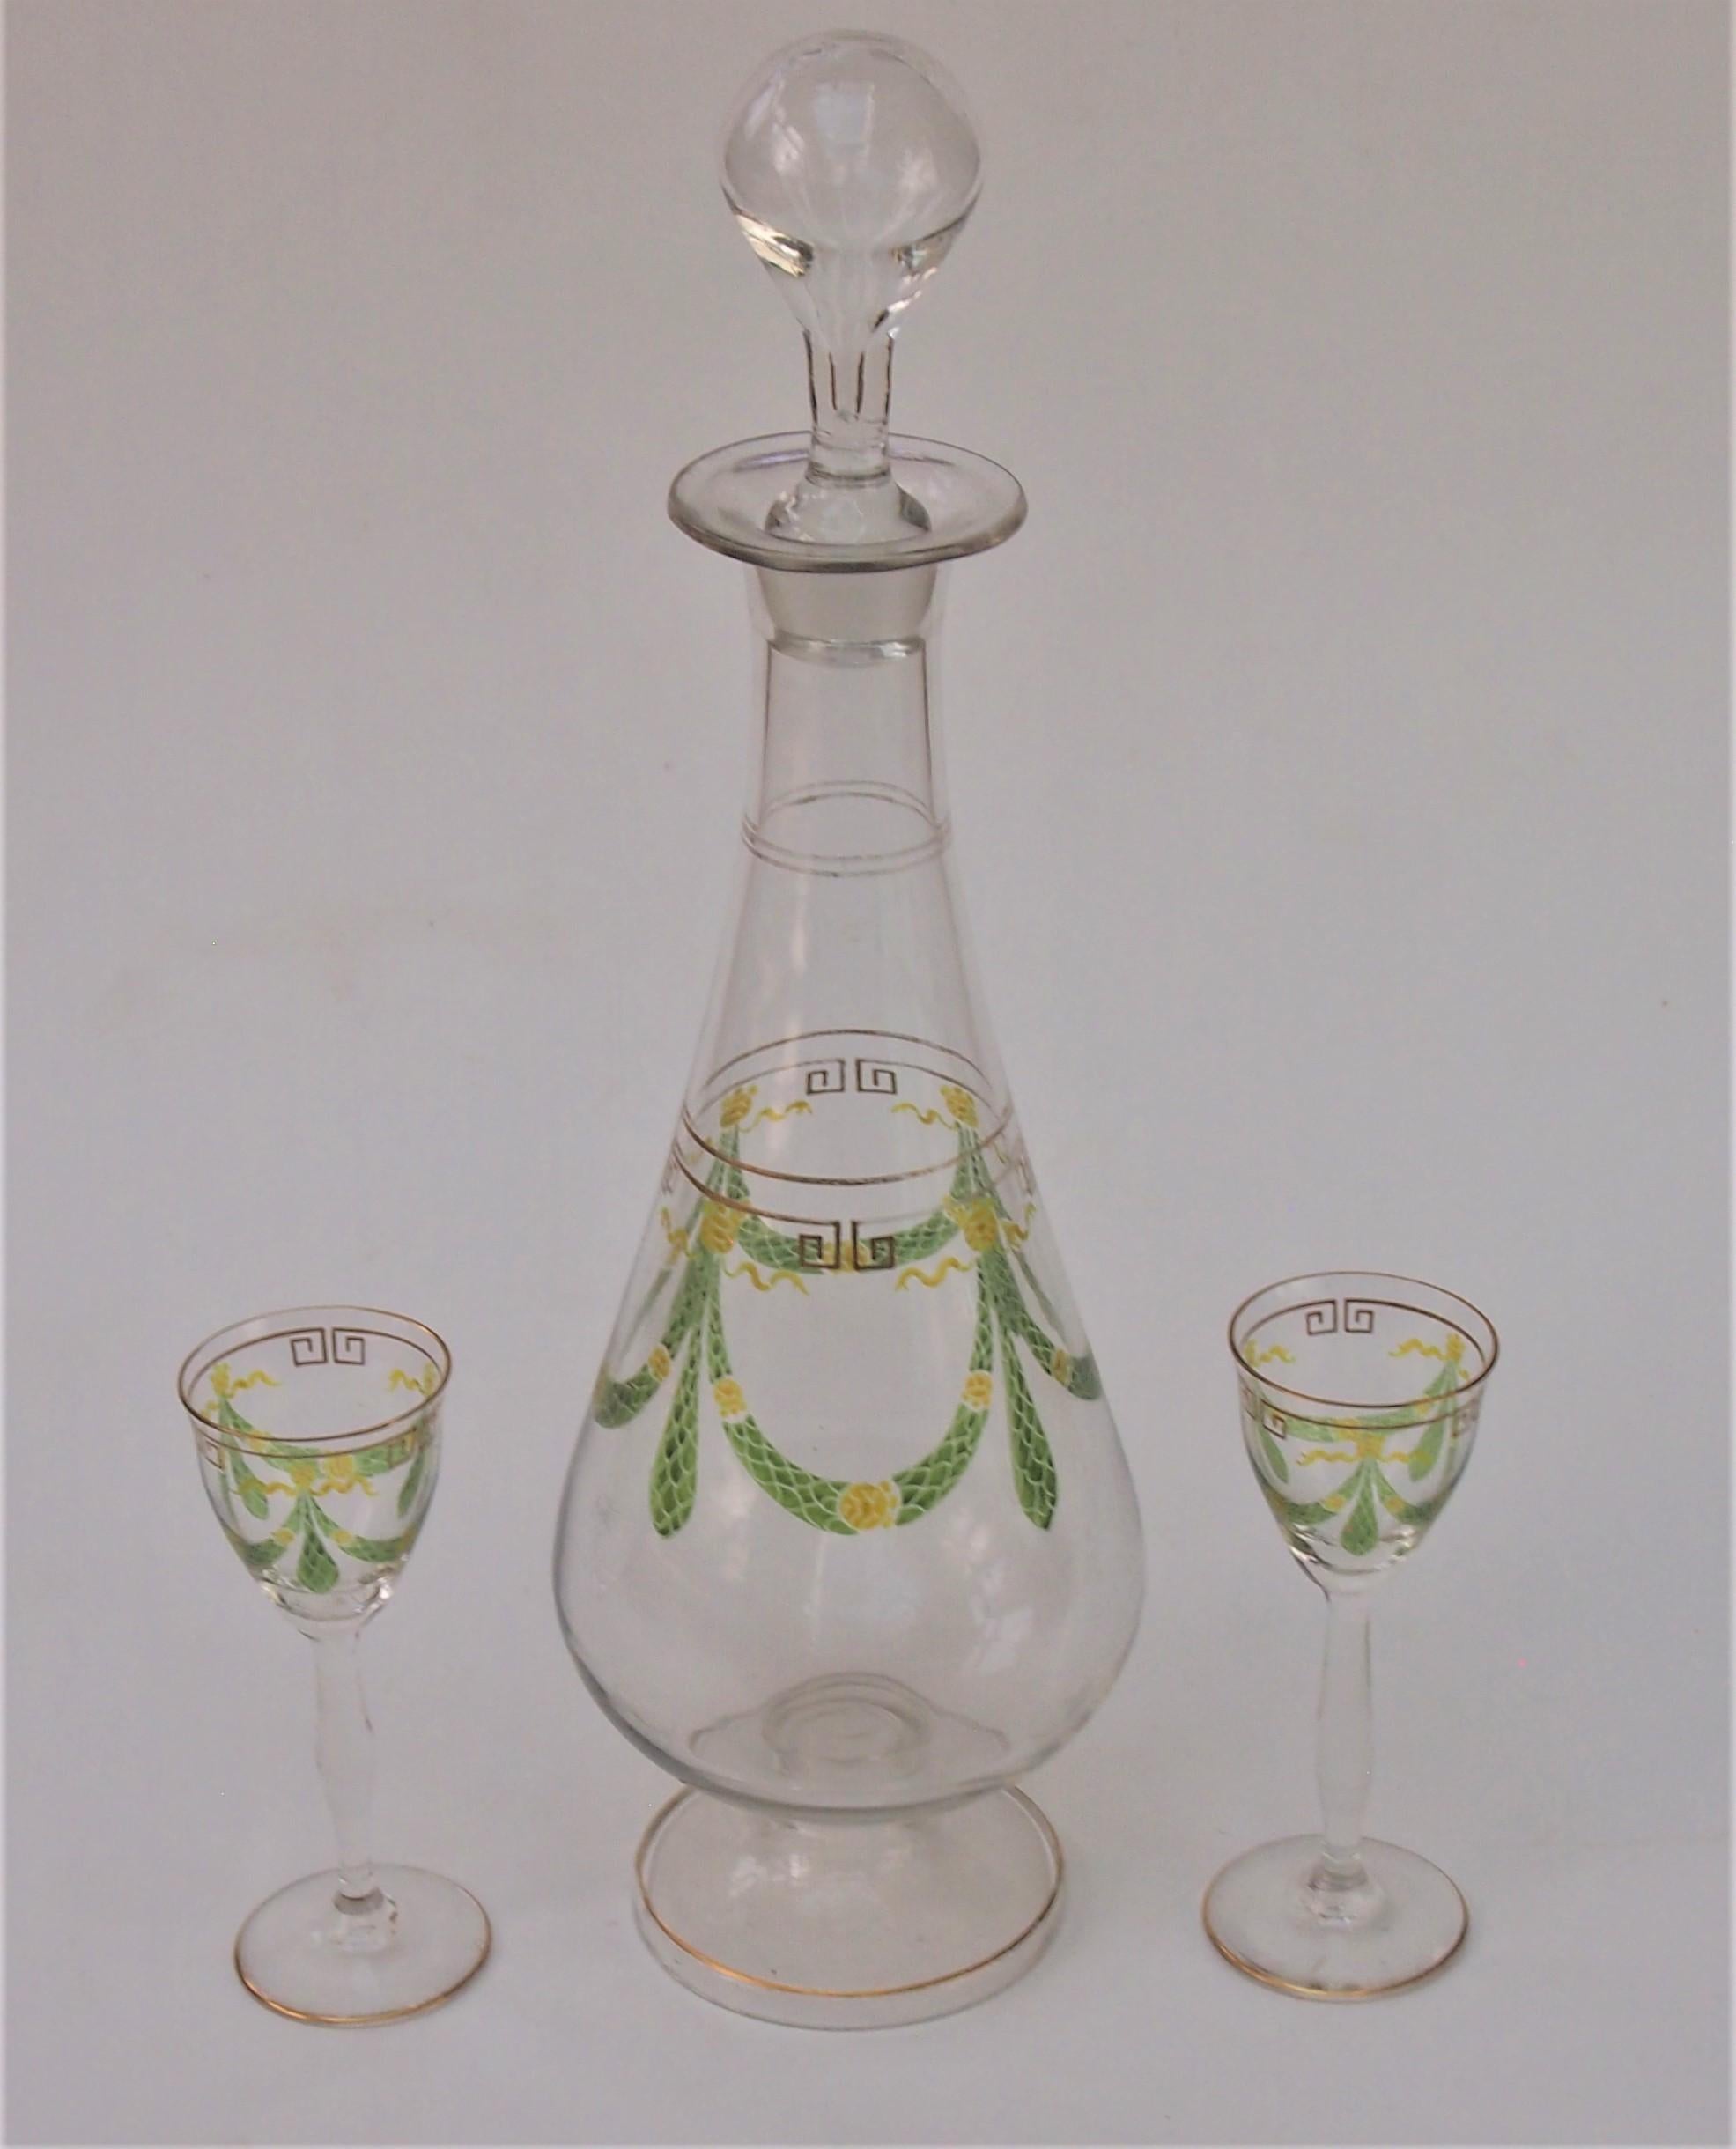 Superbe ensemble Theresienthal - une grande carafe transparente et émaillée et deux petits verres à liqueur, décorés de guirlandes en émail translucide vert et jaune dans un style classique du Mouvement esthétique. Les verres mesurent 12 cm de haut